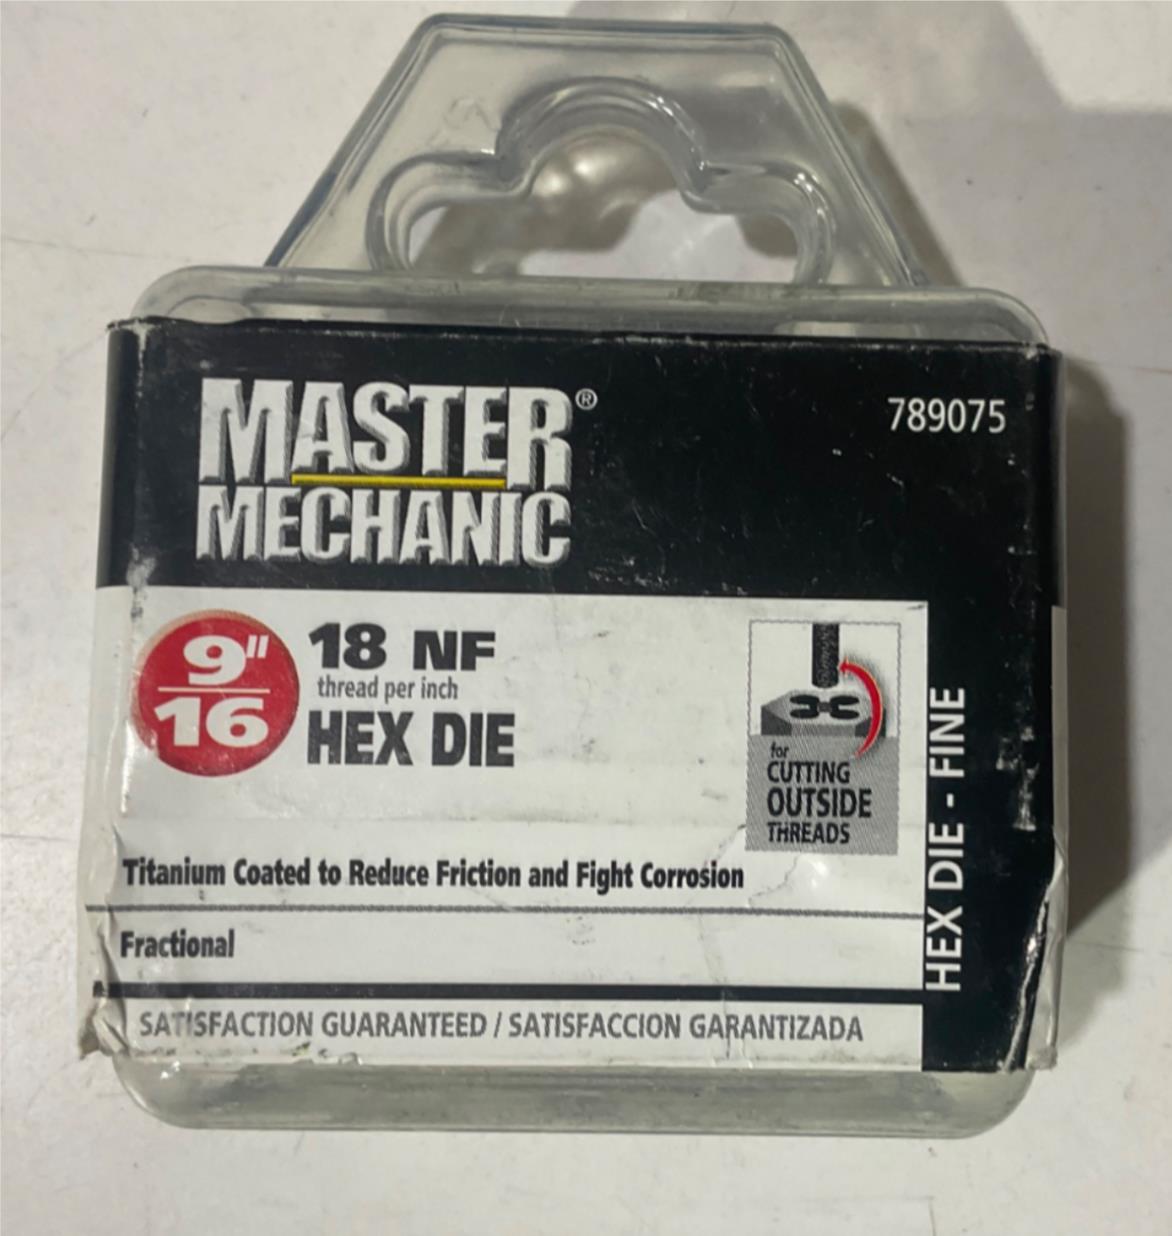 Master Mechanic 789075 9/16" 18 NF Titanium Coated Hex Die